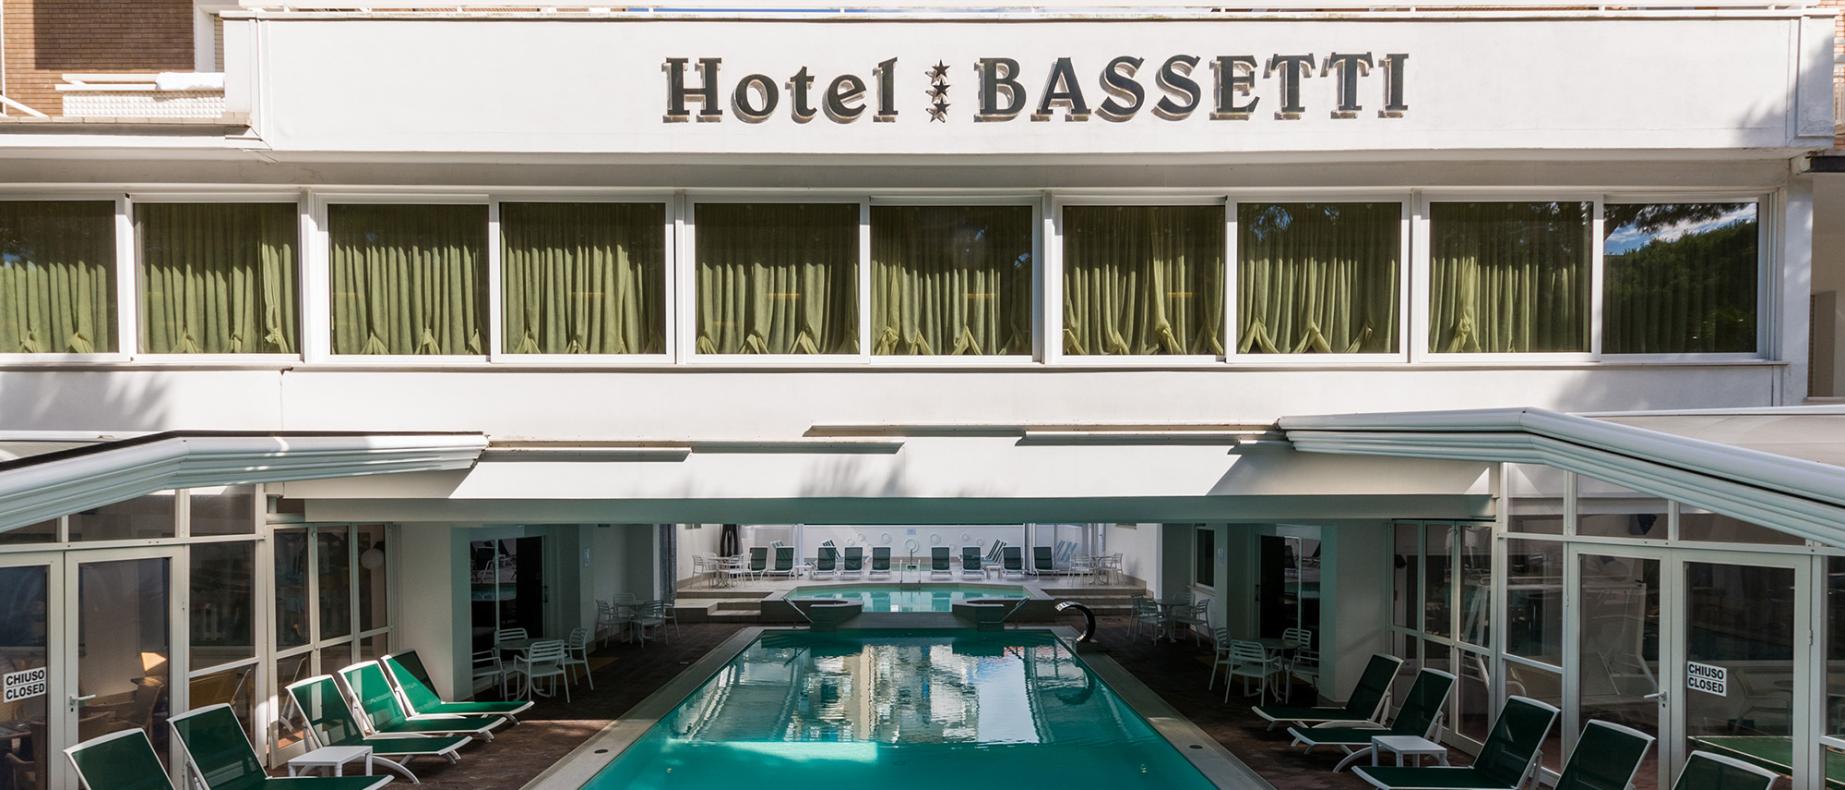 hotelbassetti it 1-it-304973-il-nostro-pacchetto-relax-scopri-le-camere-con-i-nuovi-balconi-xl 003